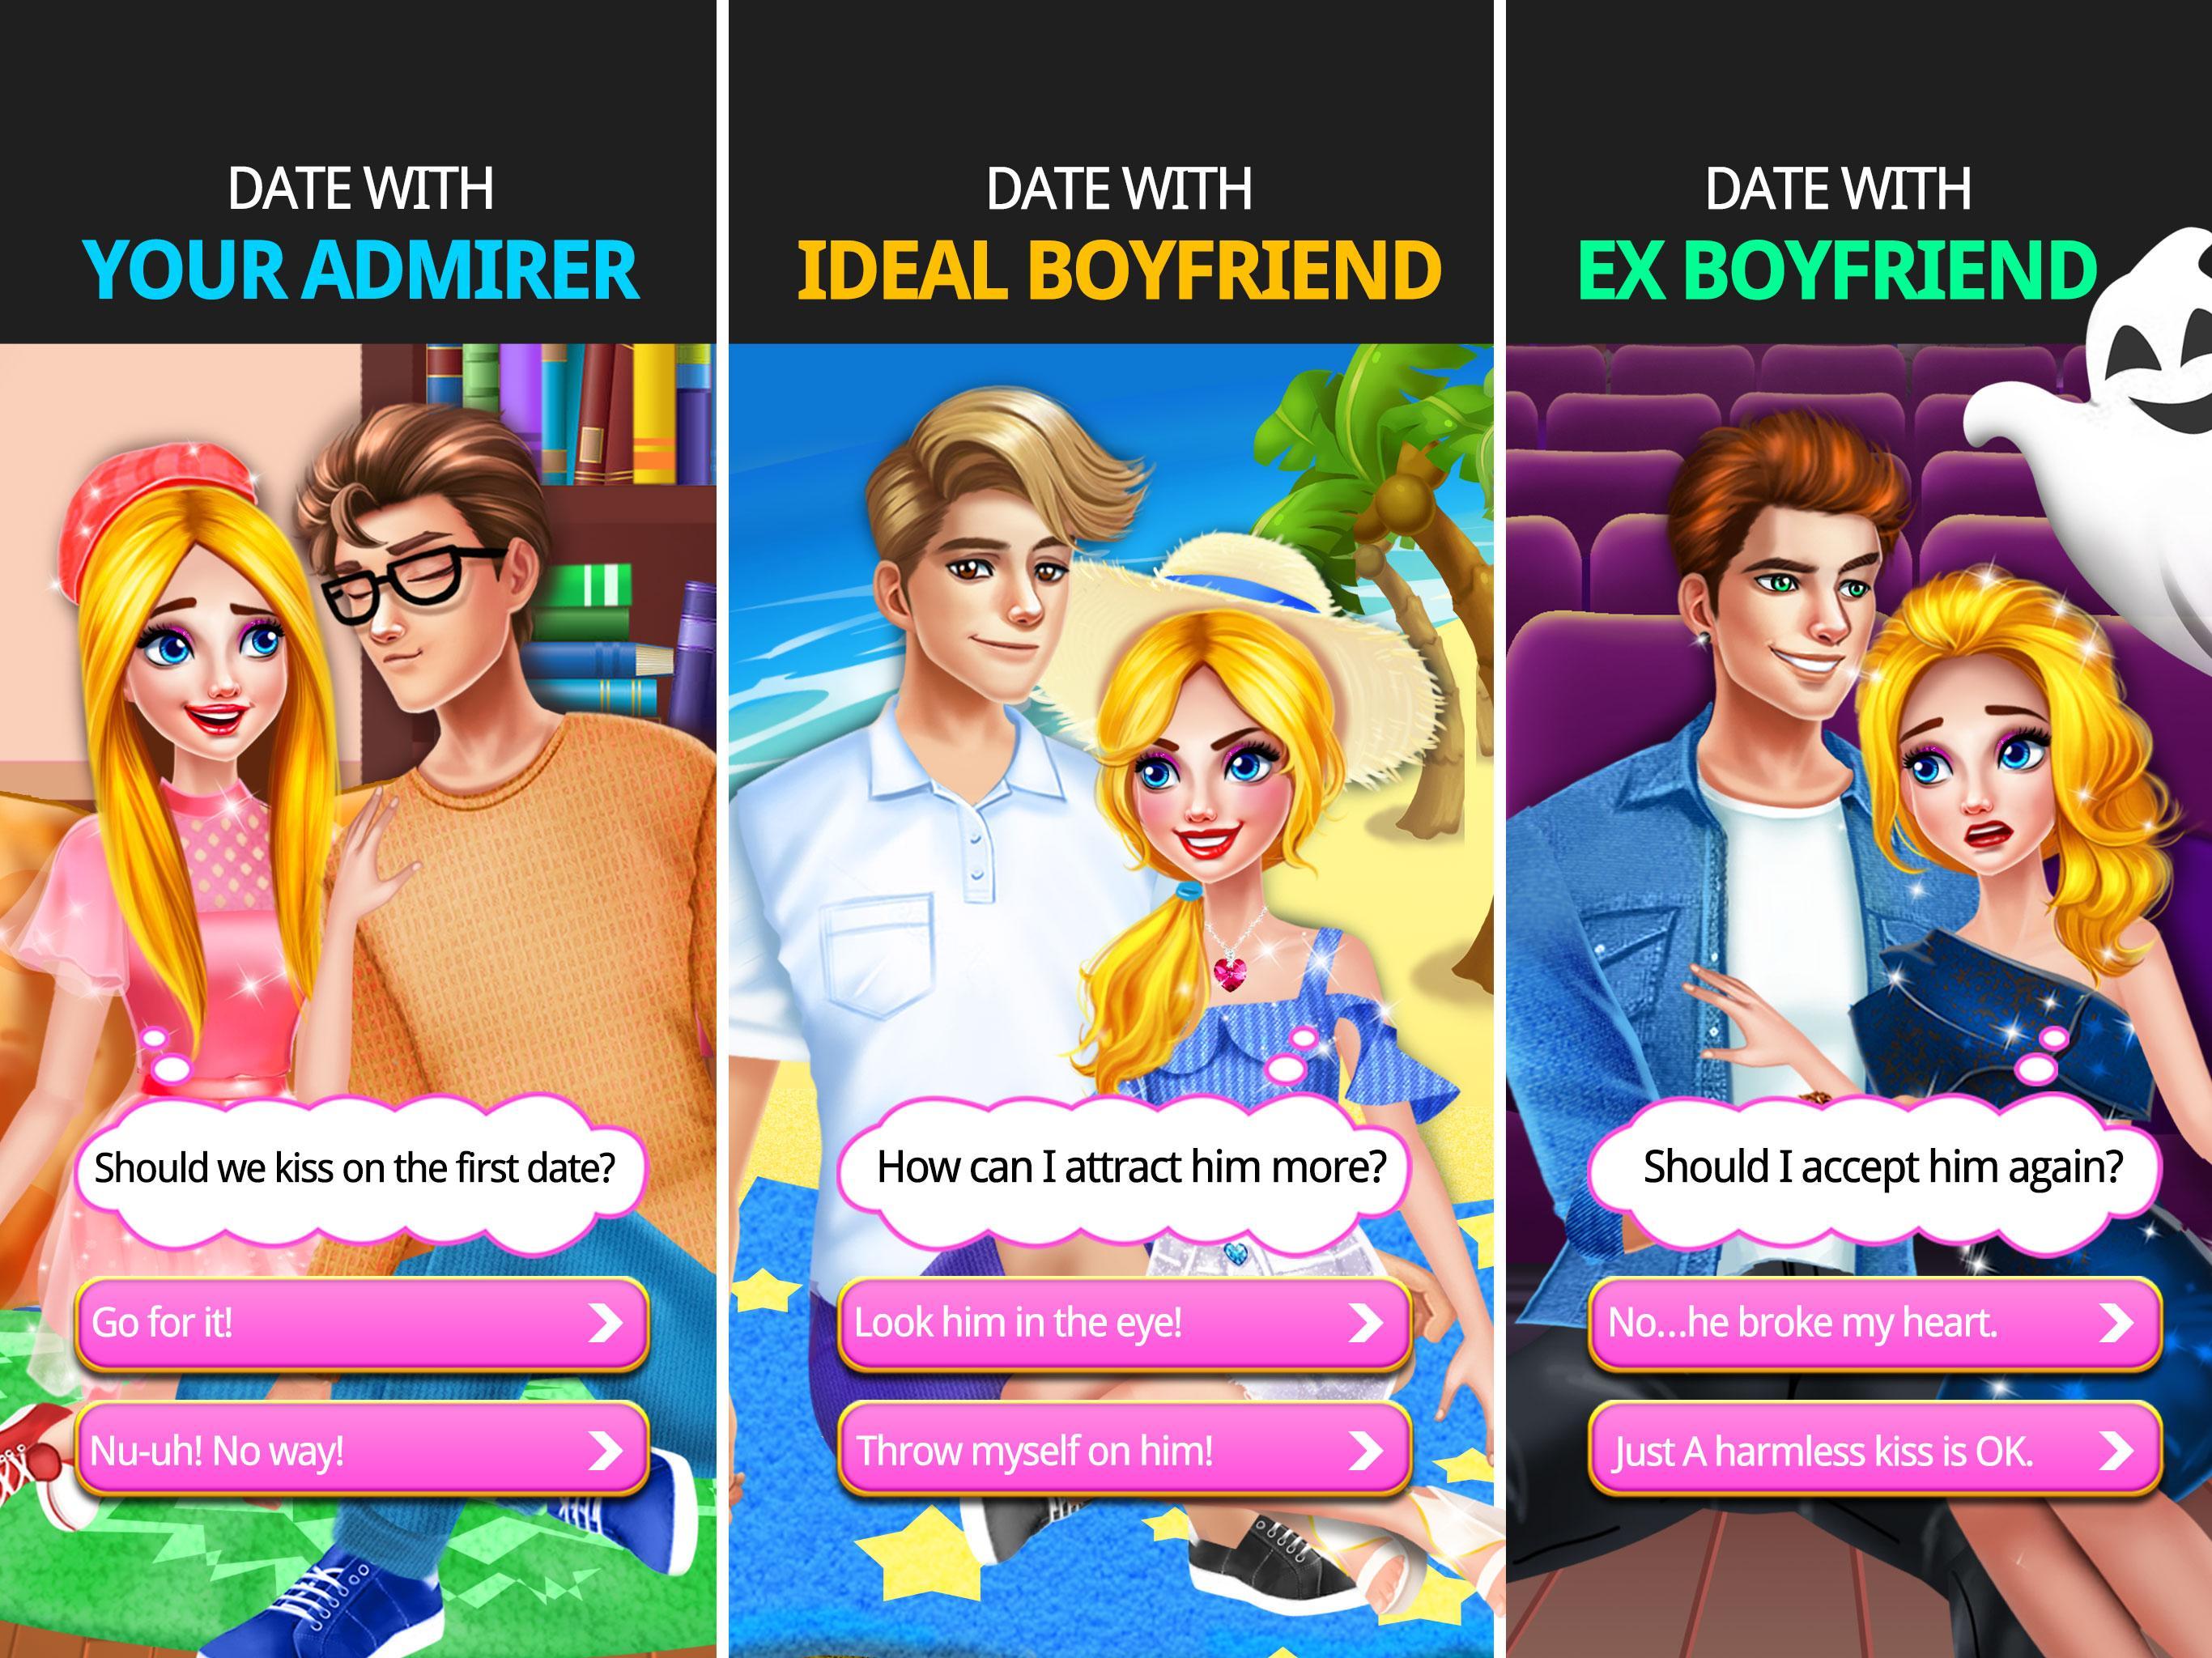 Boyfriend game download